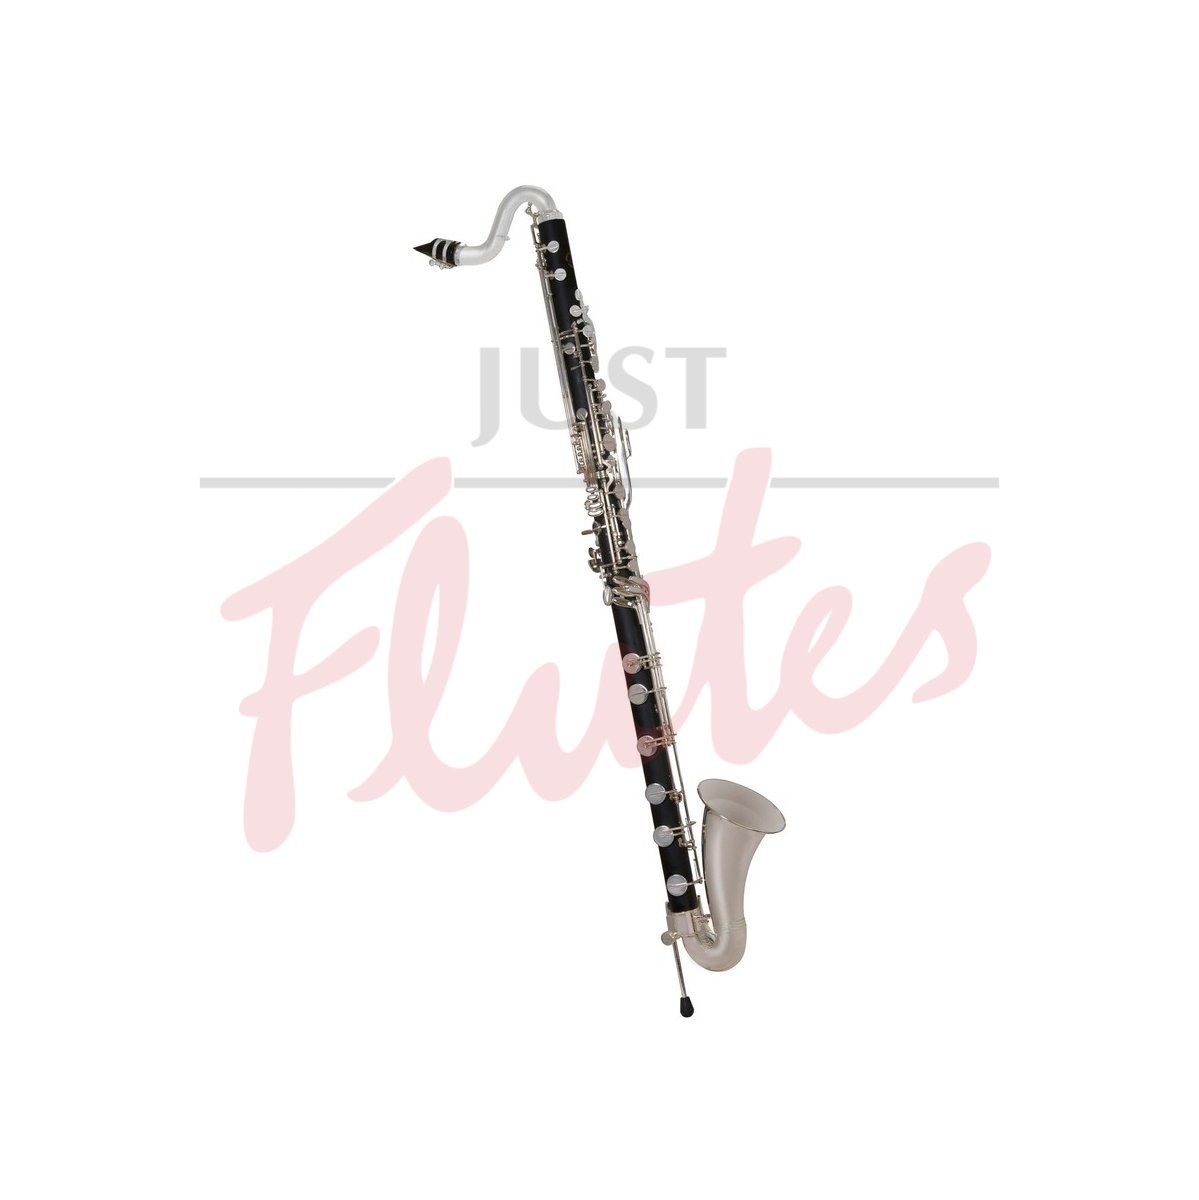 JP222 Bass Clarinet